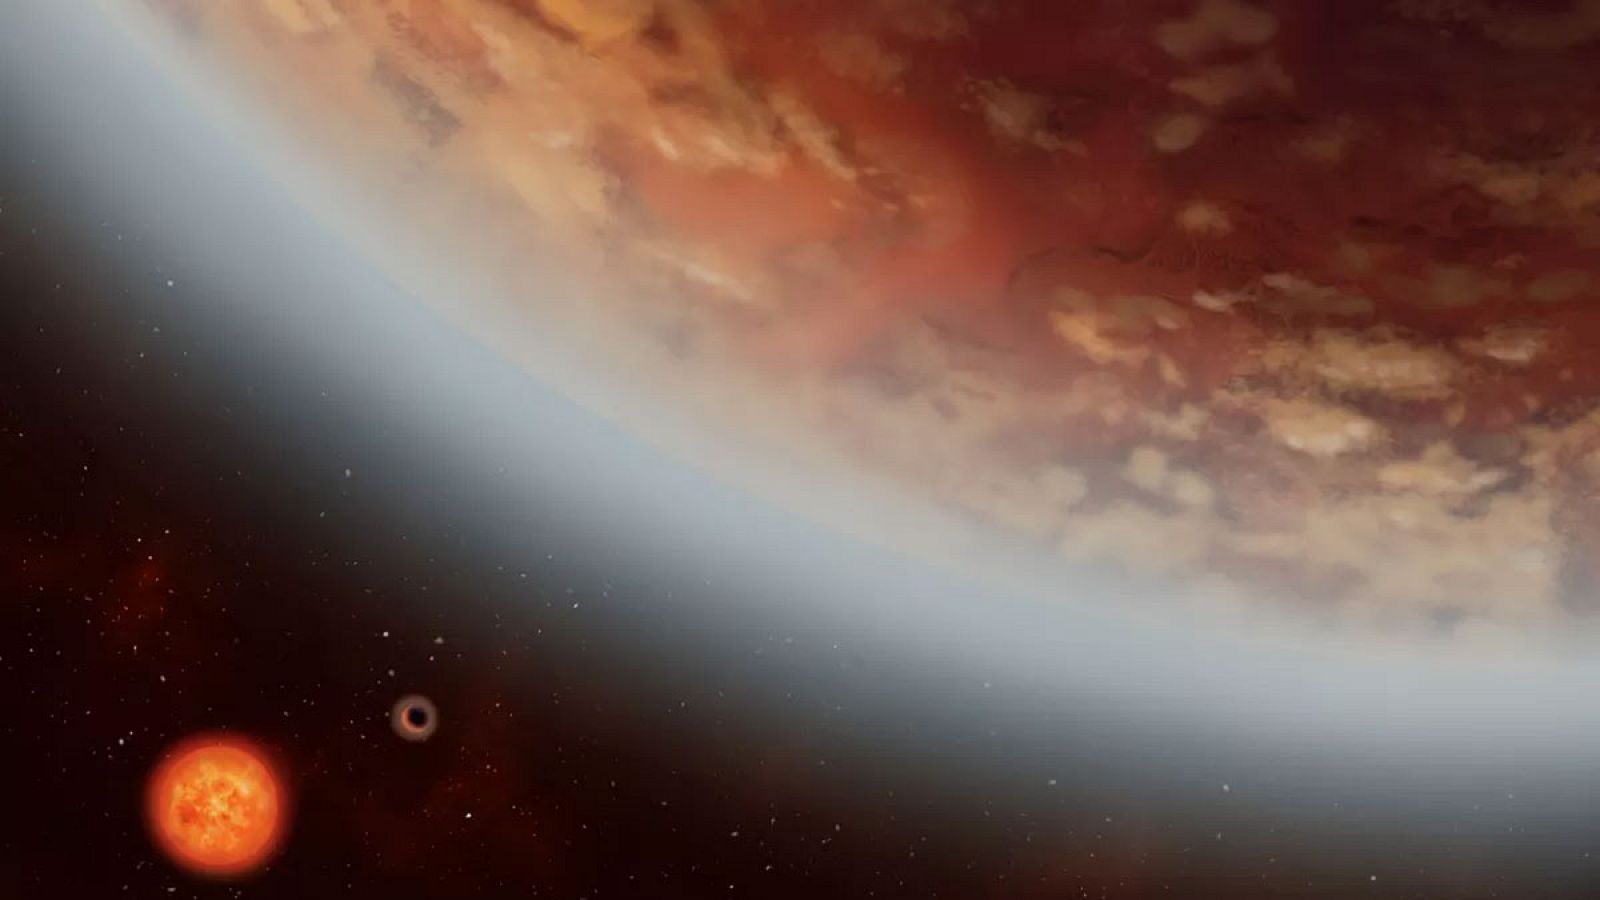 Un grupo de científicos ha detectado por primera vez vapor de agua en la atmósfera de un exoplaneta de tamaño comparable a la Tierra, lo que le convierte en "el mejor candidato hasta ahora para ser habitable", según un estudio publicado este miércole